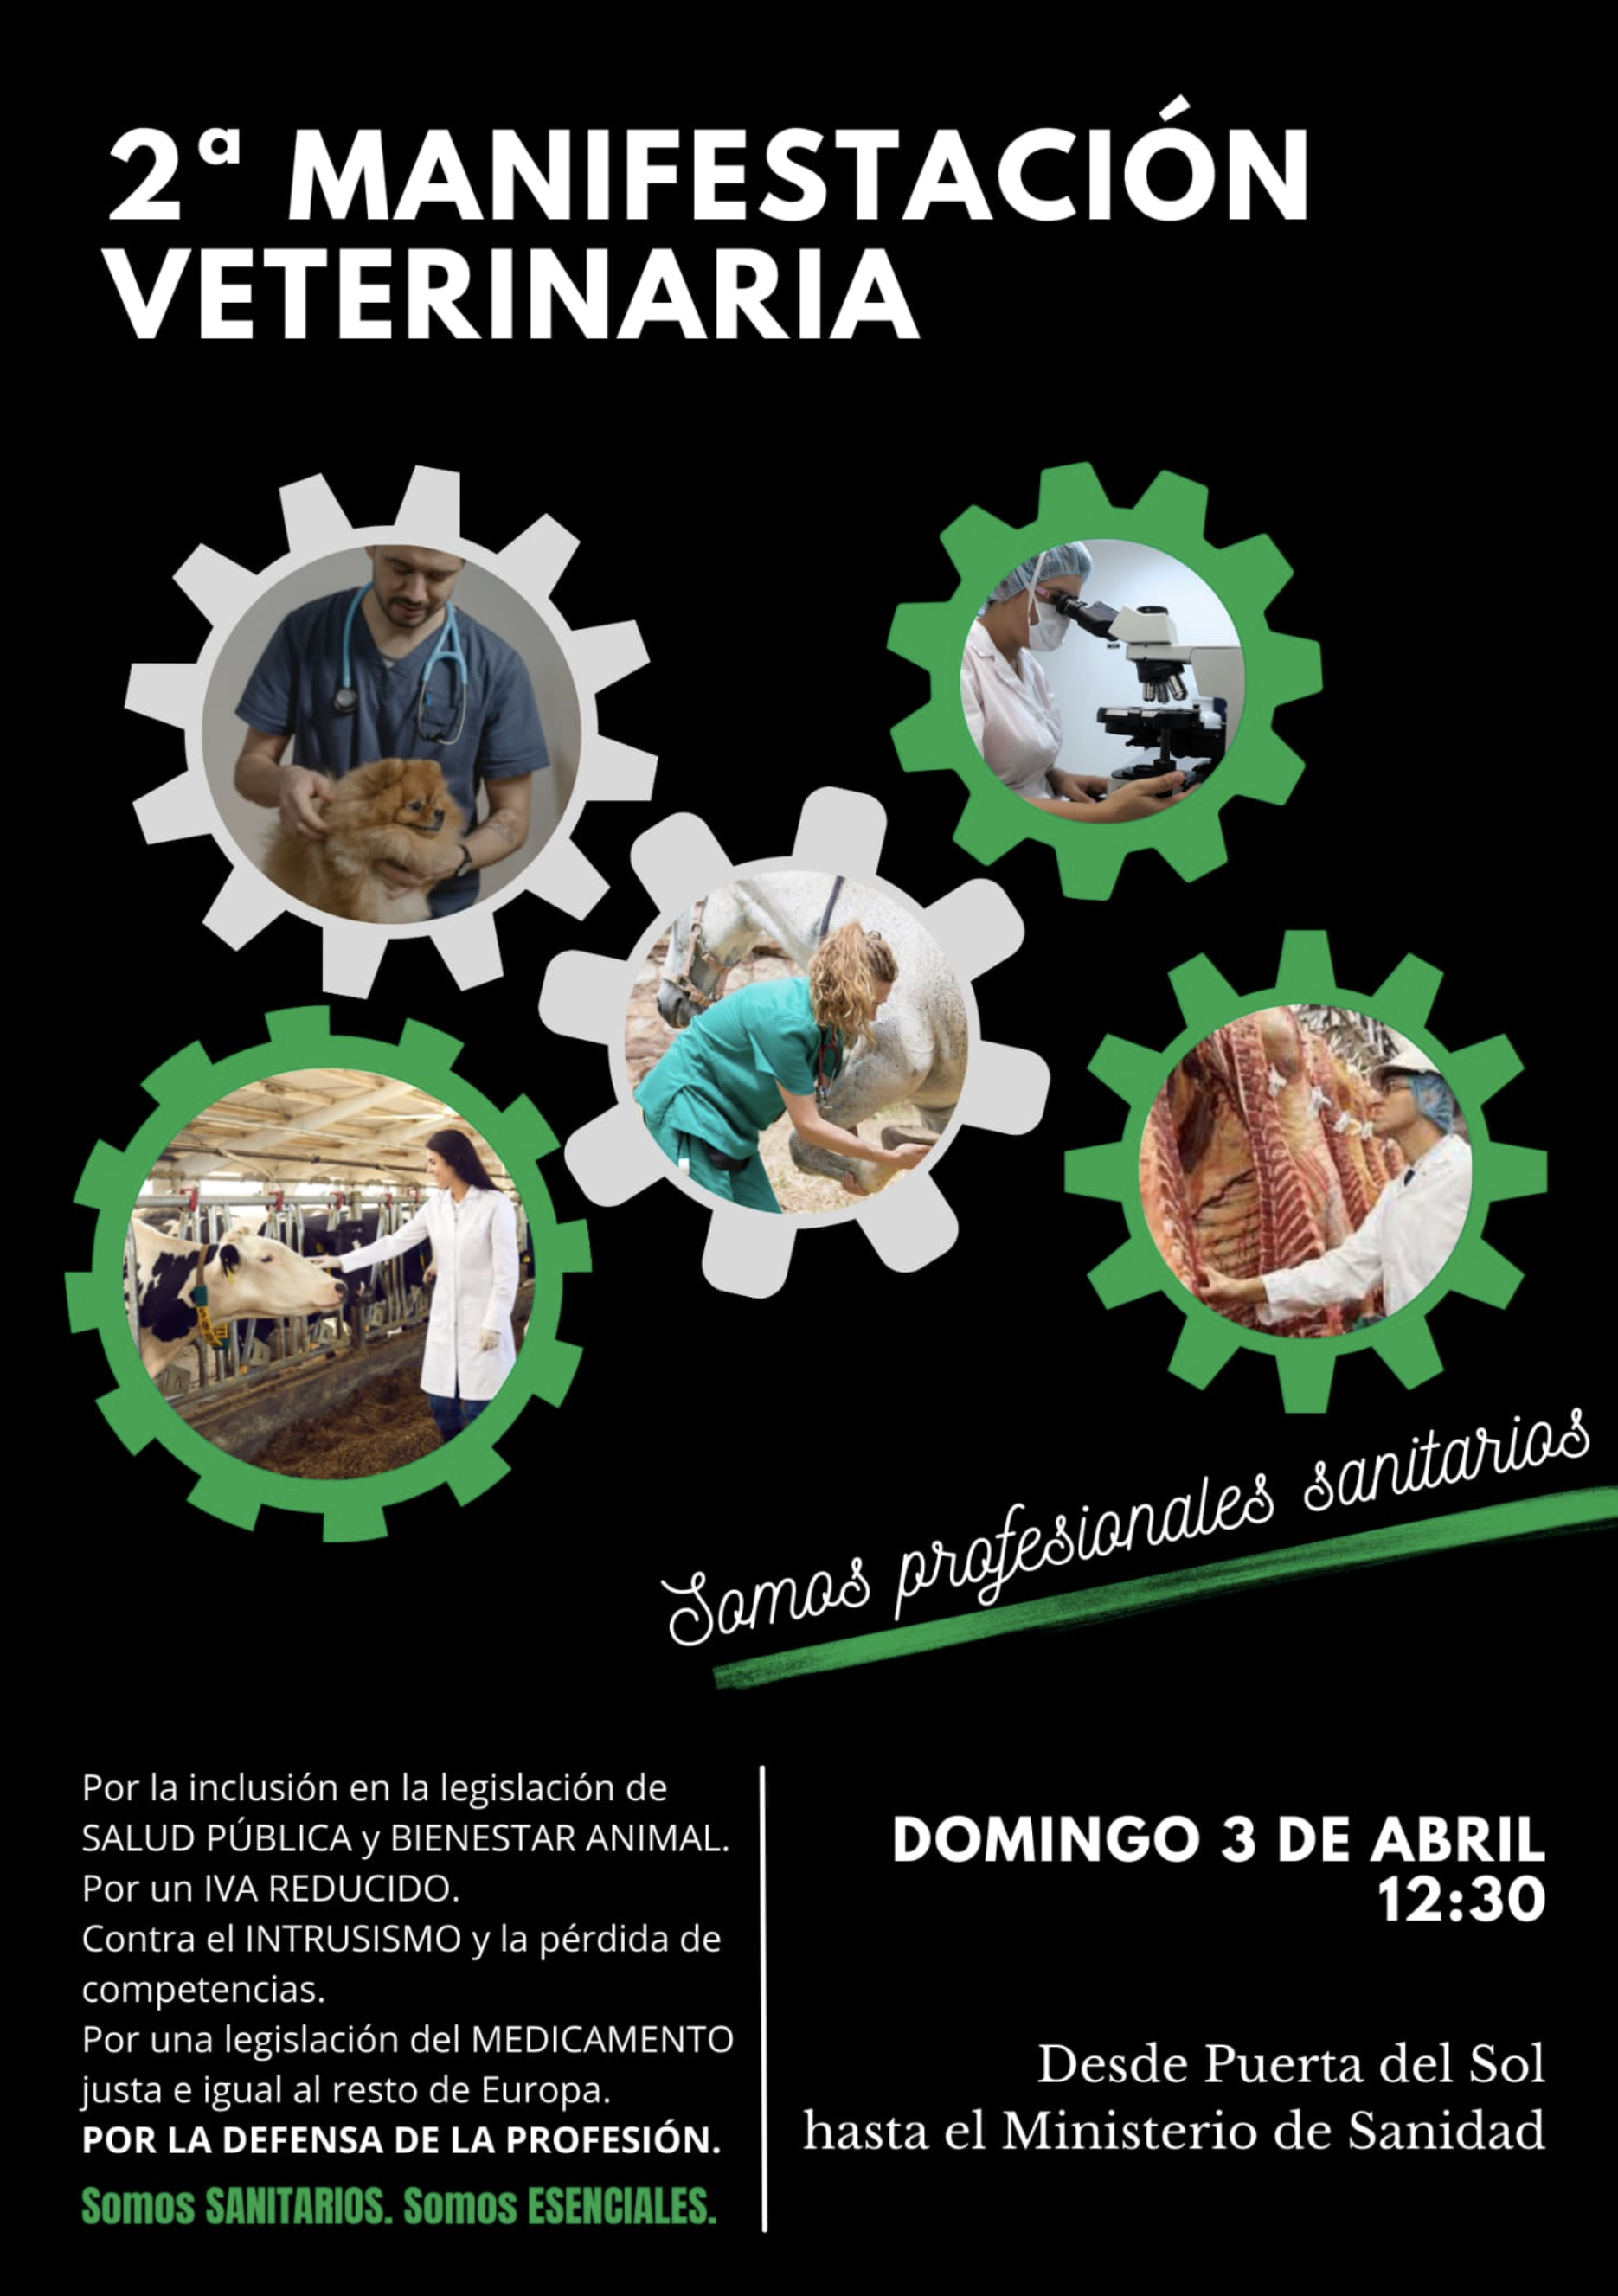 AXON COMUNICACION, Manifestación 3 de abril: El ICOVBA apoya la manifestación veterinaria